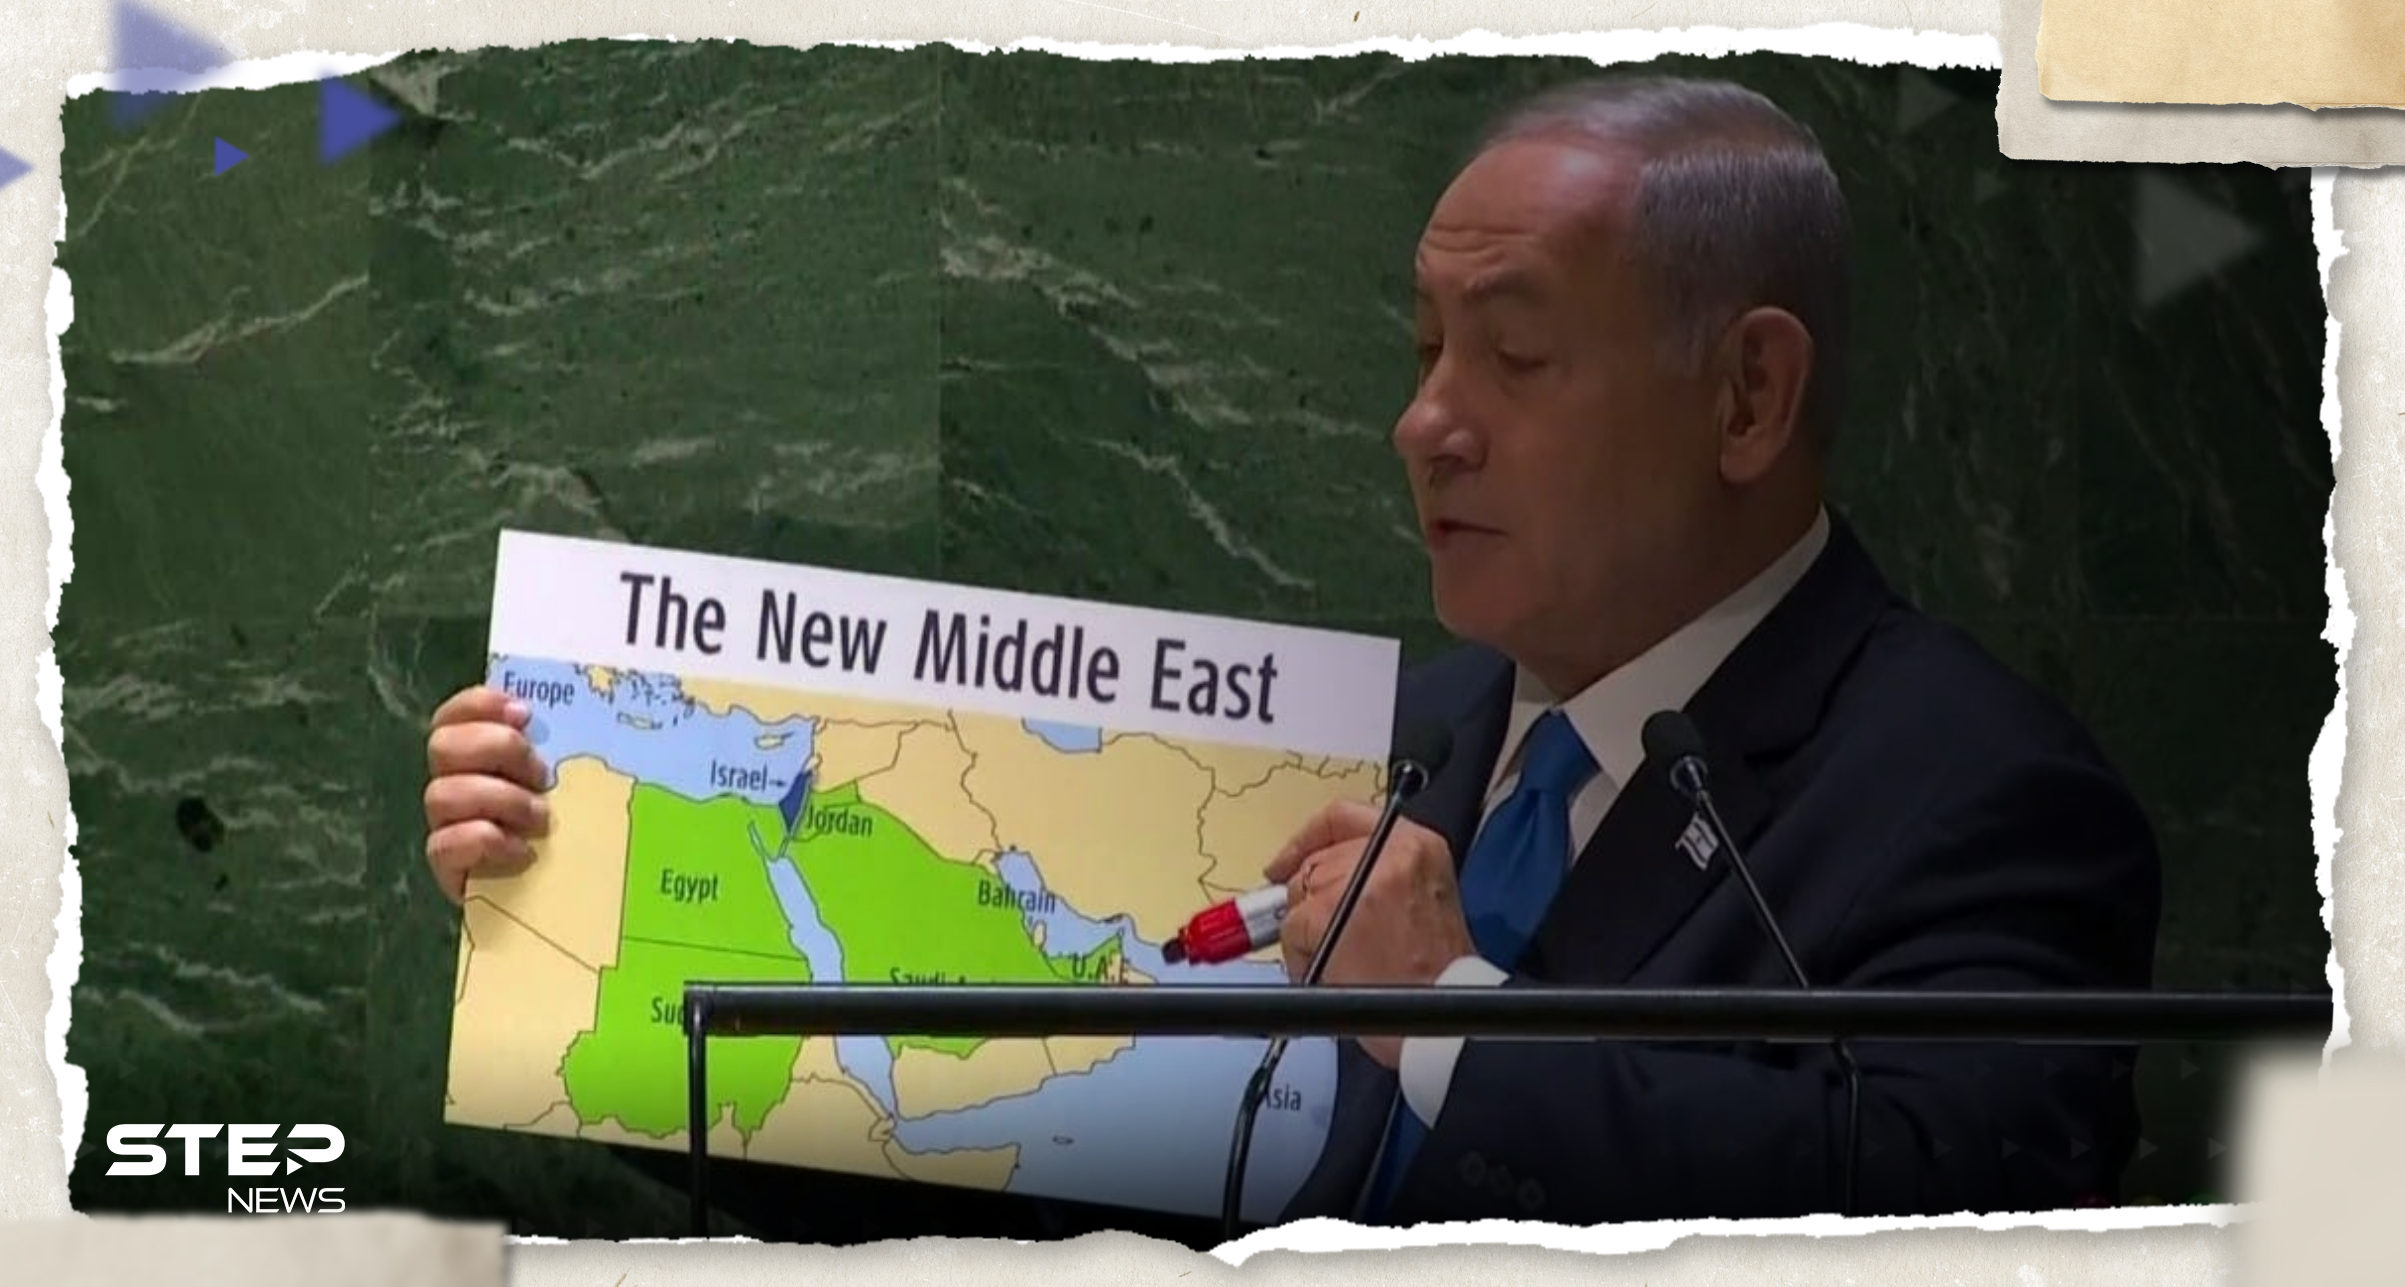 نتنياهو يتحدث عن "شرق أوسط جديد" أمام الأمم المتحدة.. ماذا قال عن اتفاق السعودية؟